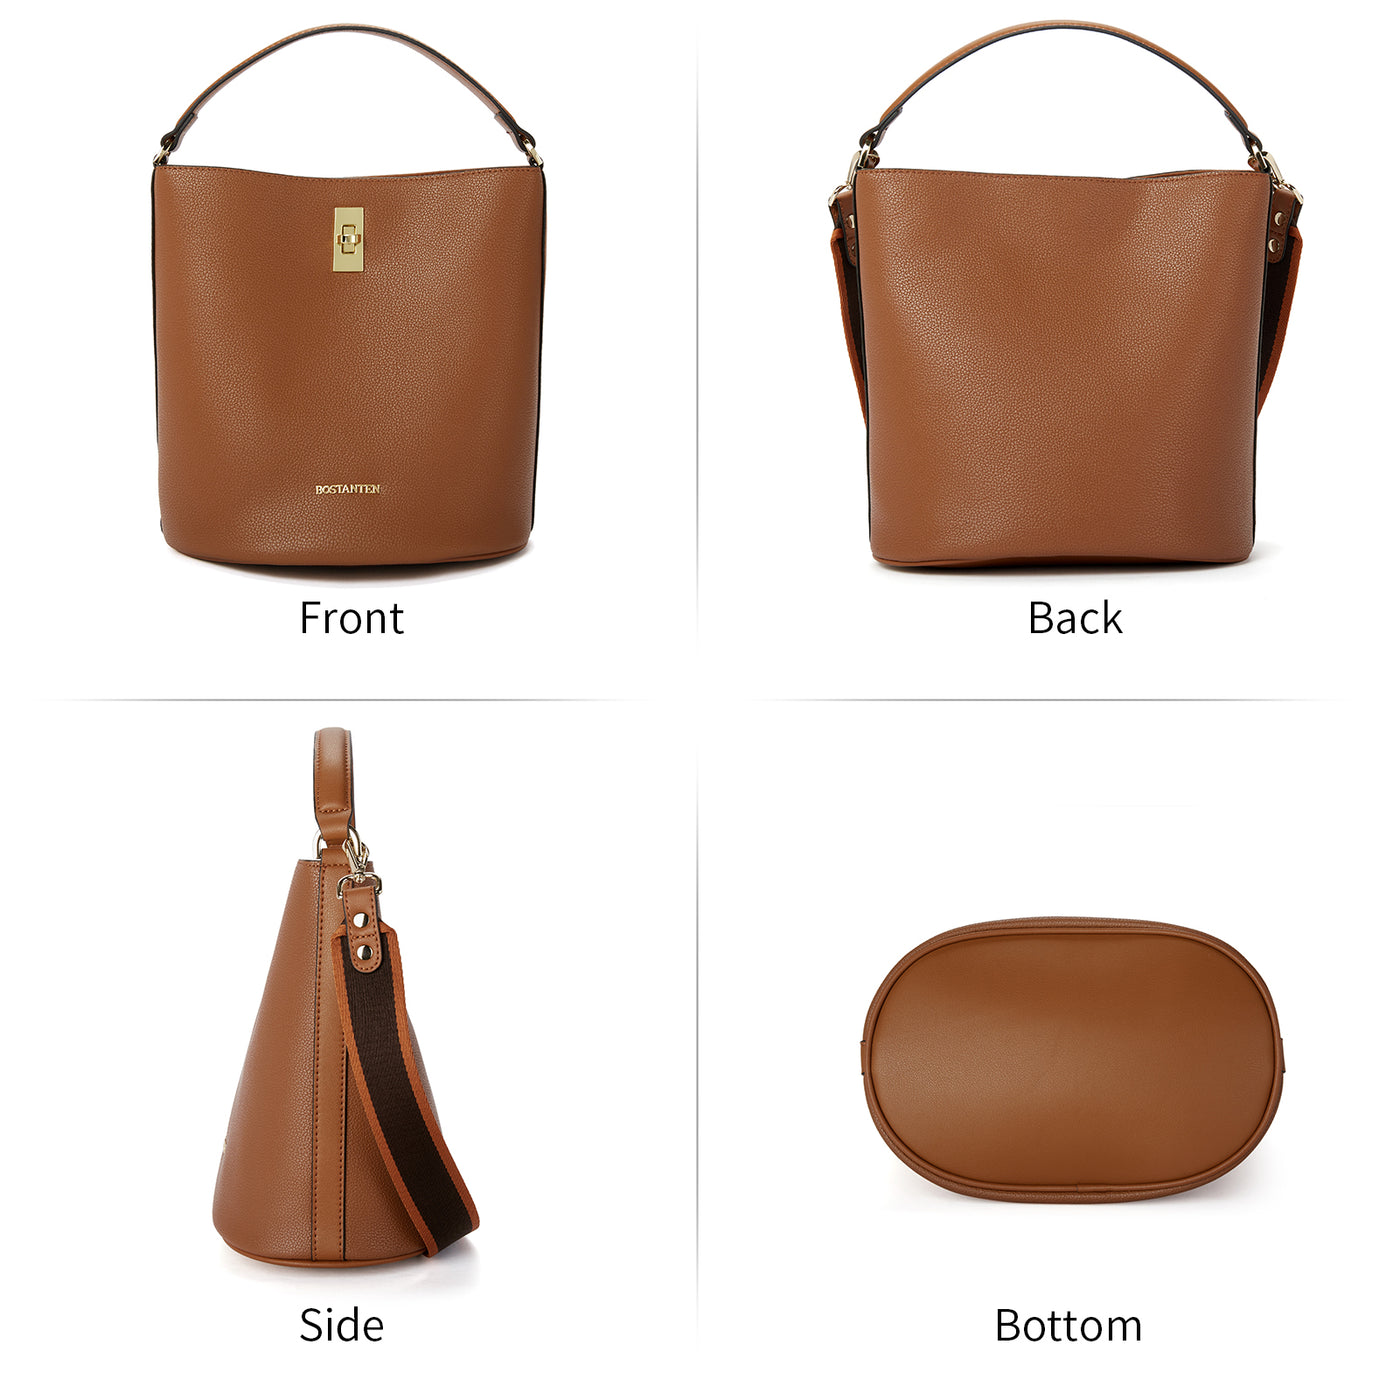 BOSTANTEN Leather Handbags for Women Designer Hobo Bucket Purses Fashion Ladies Crossbody Bags for Work Travel Daily - BOSTANTEN